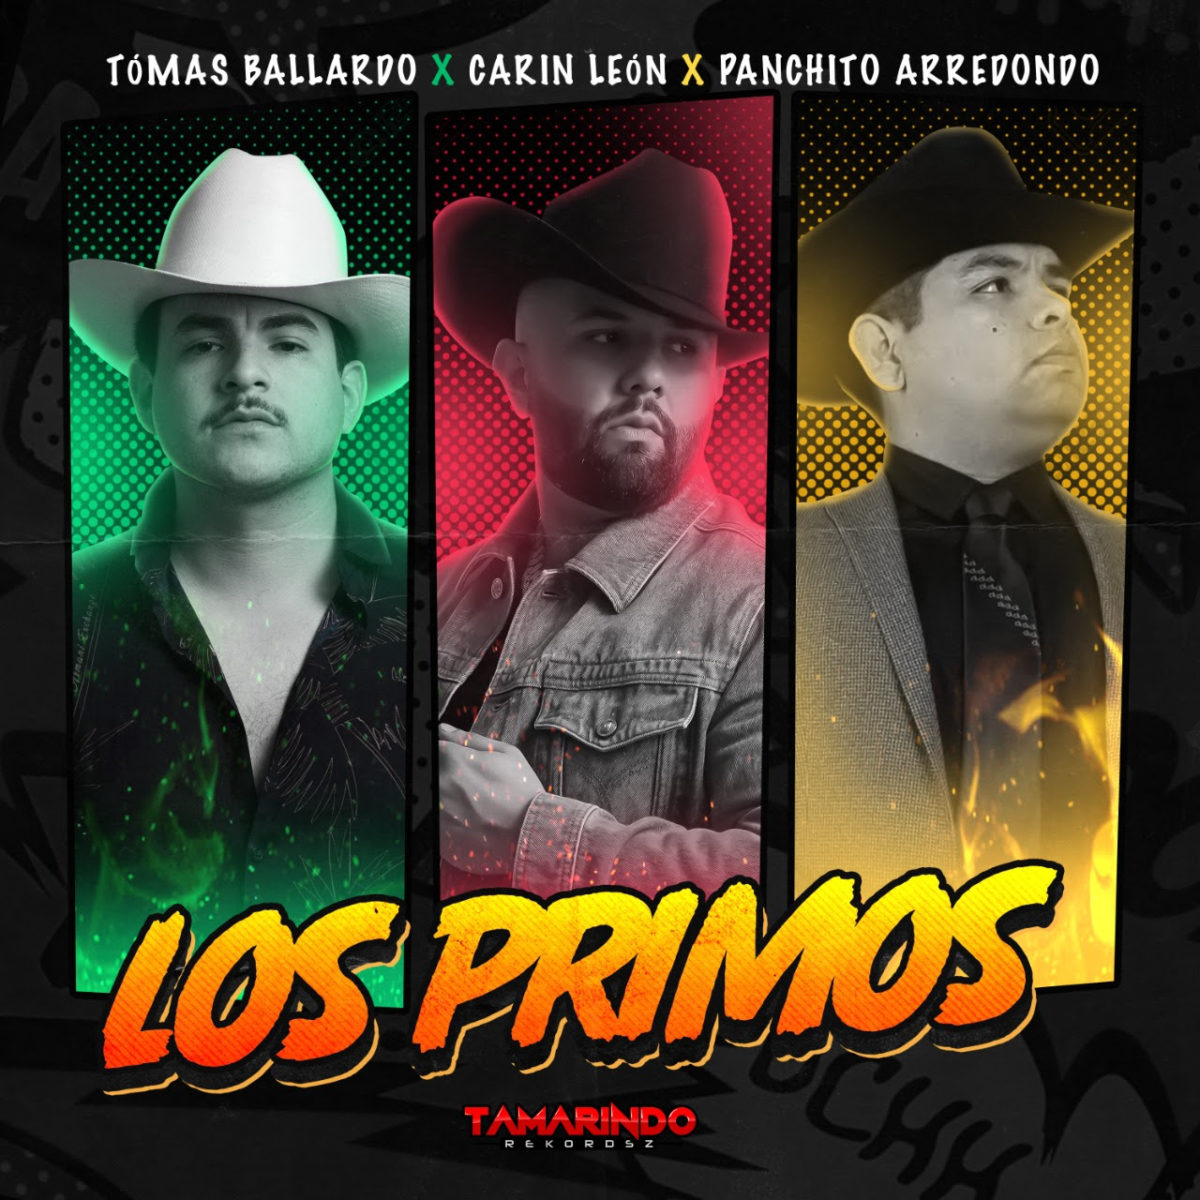 ‘LOS PRIMOS’ el nuevo sencillo de Carin León junto a Tómas Ballardo y Panchito Arredondo